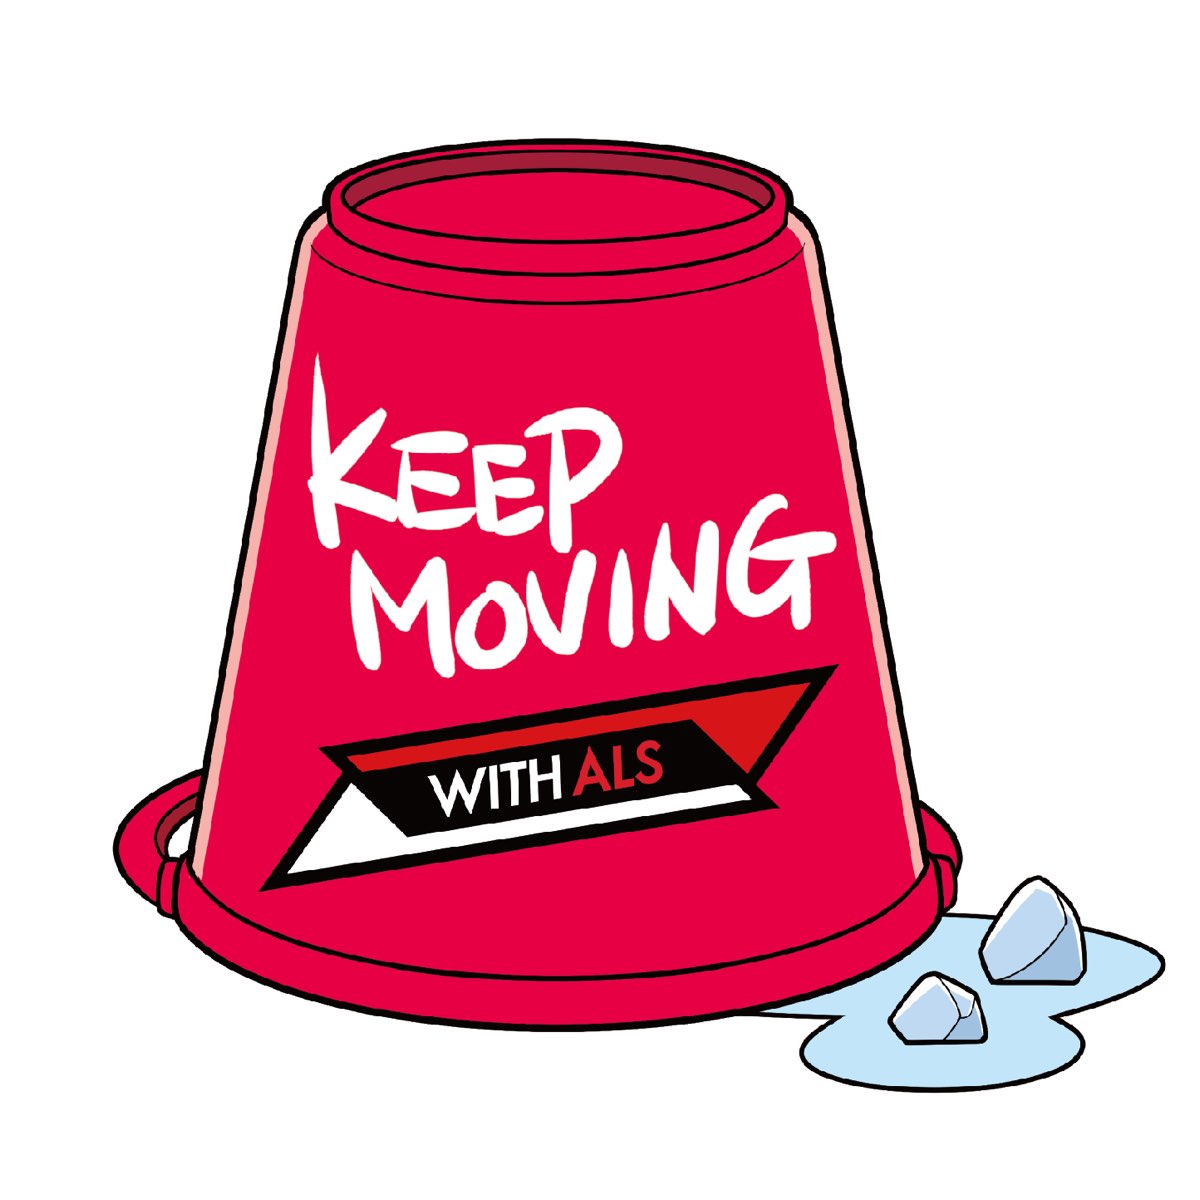 Kastuvas keep. Keep moving. Yay Baby. Keep on moving kastuvas feat. Emie.